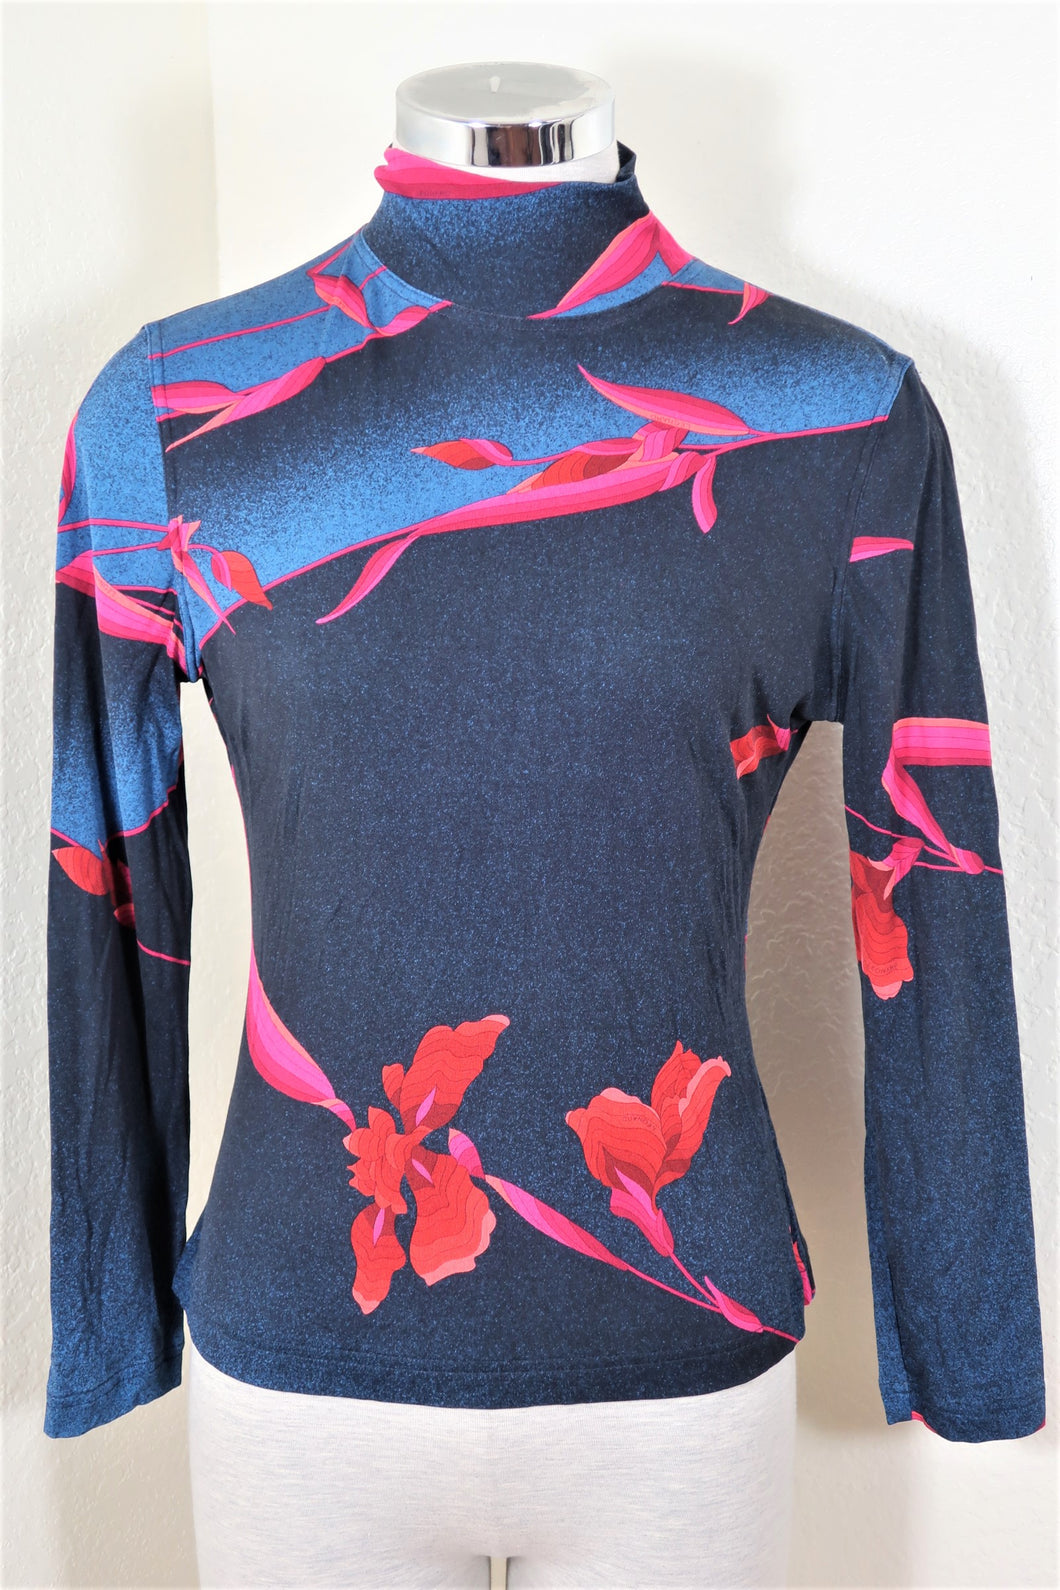 Vintage LEONARD PARIS Floral Black Red LongSleeve Turtle Neck Top Blouse Shirt 40 S M 4 5 6